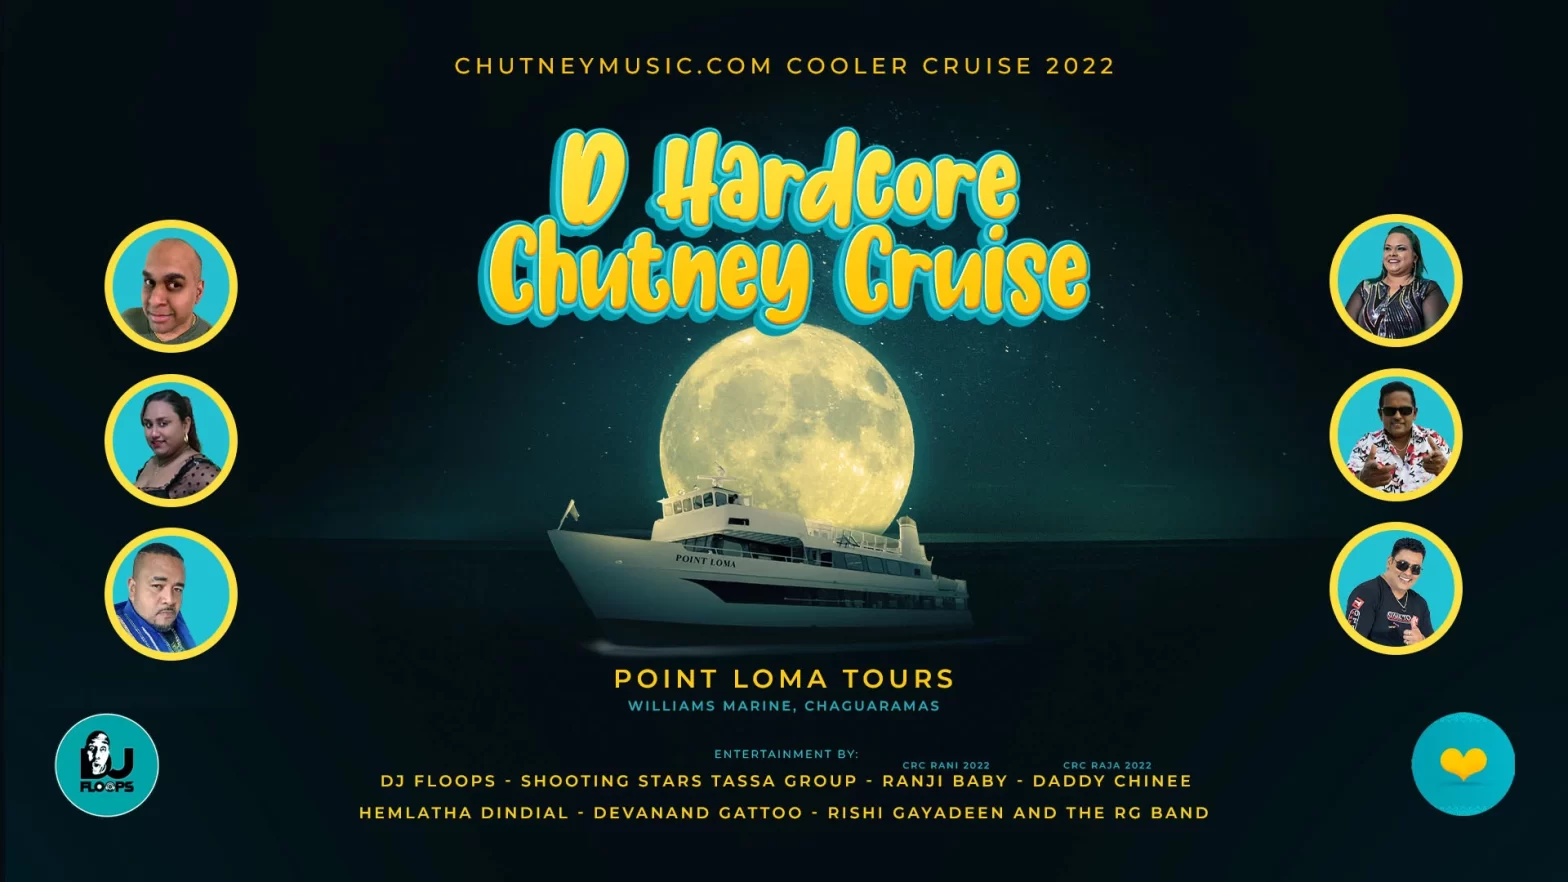 Chutney Cooler Cruise 2022 (D HARDCORE CHUTNEY CRUISE)￼